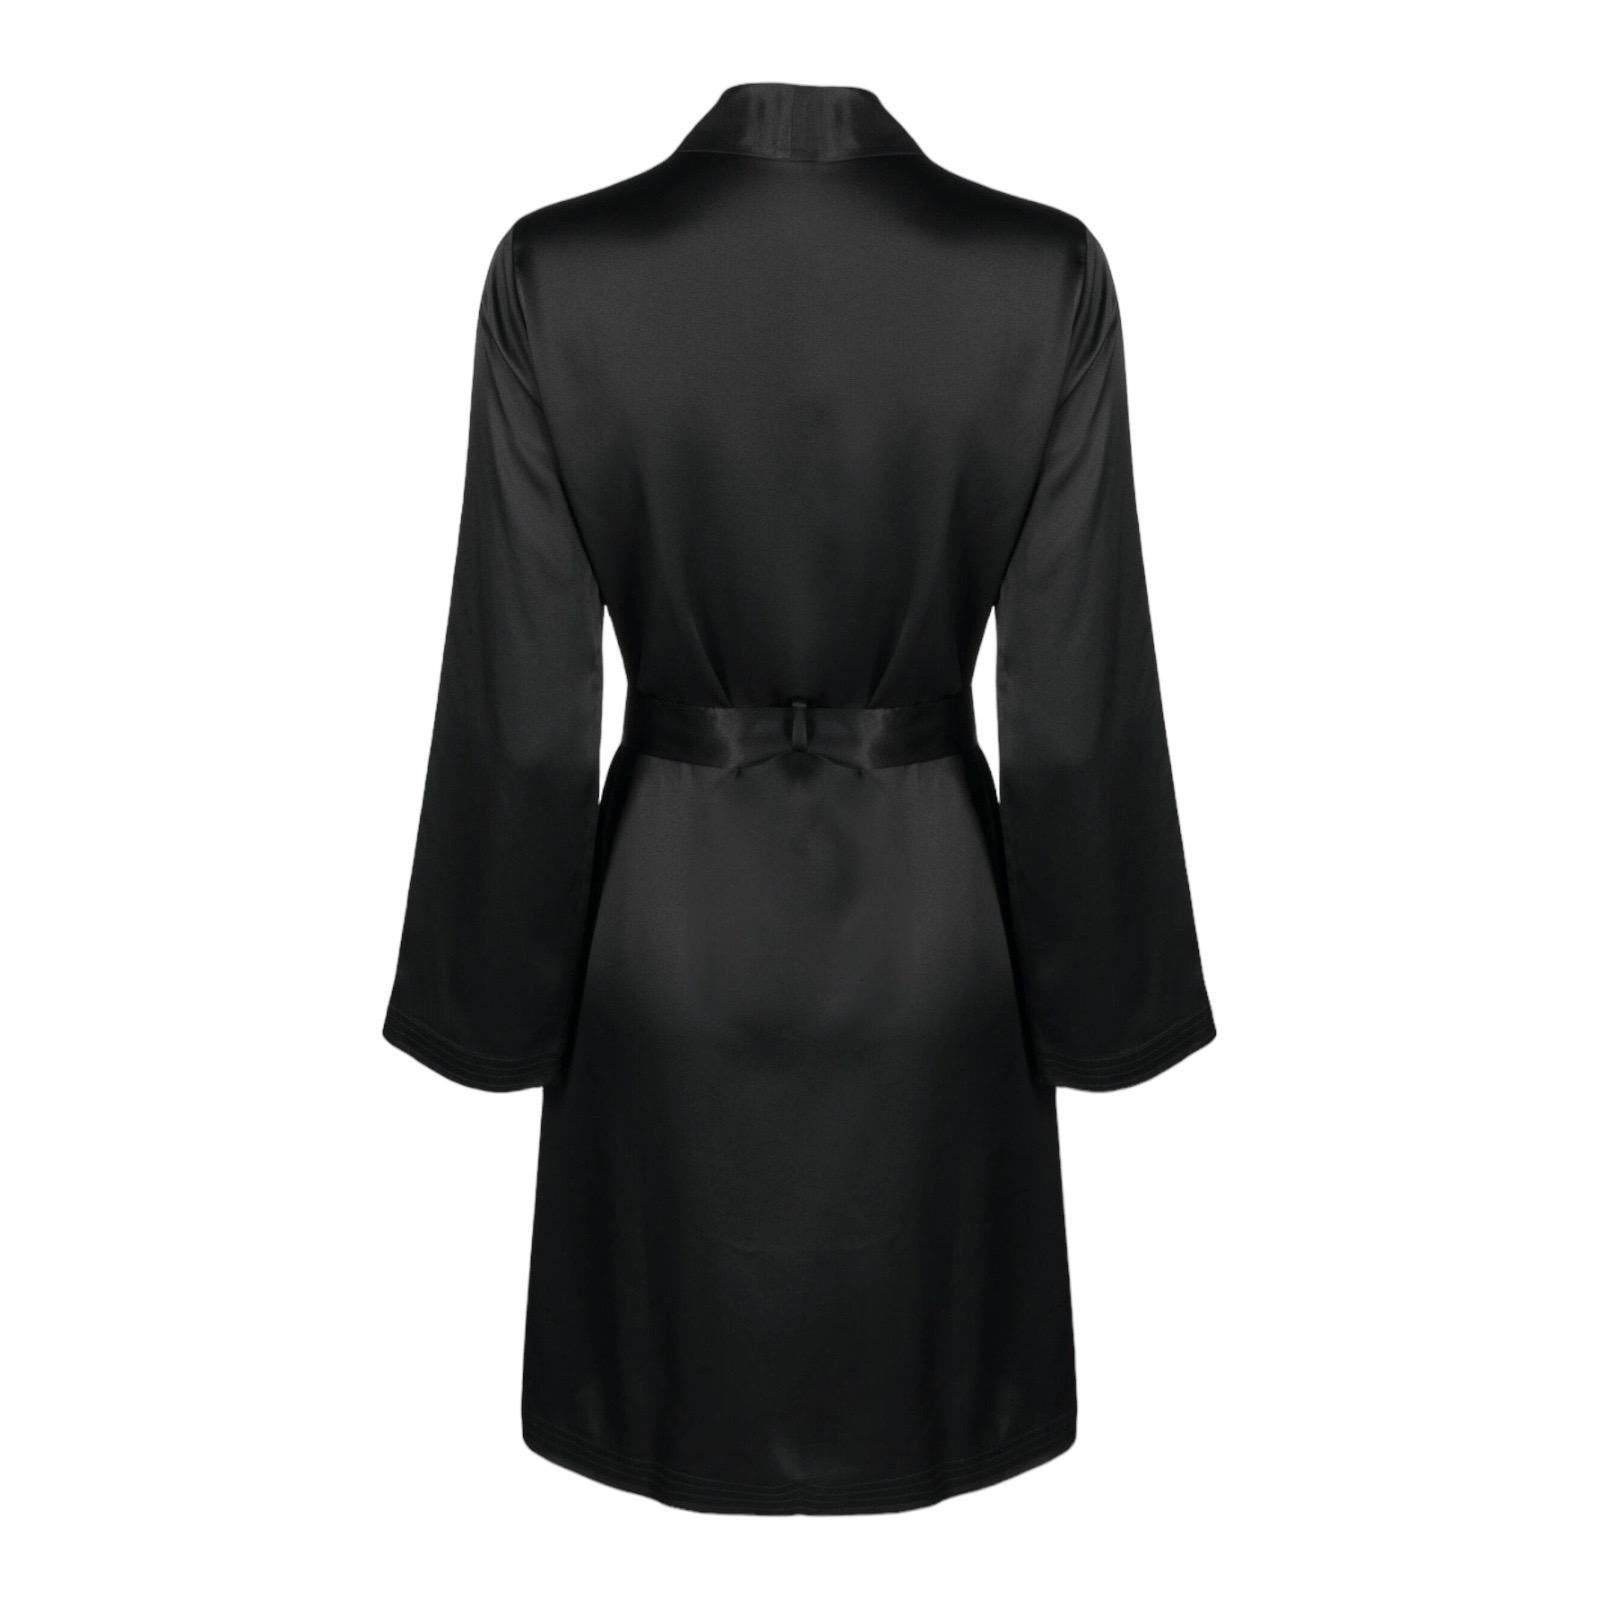 NEW La Perla Robe mit Gürtel aus schwarzer Seide


- • 100% Seide
- • Wird mit passendem Gürtel geliefert
- • Nur chemisch reinigen
- • Größe S
- • Neu mit Etiketten & extra Knopf



AD-Bild nur als Stilreferenz